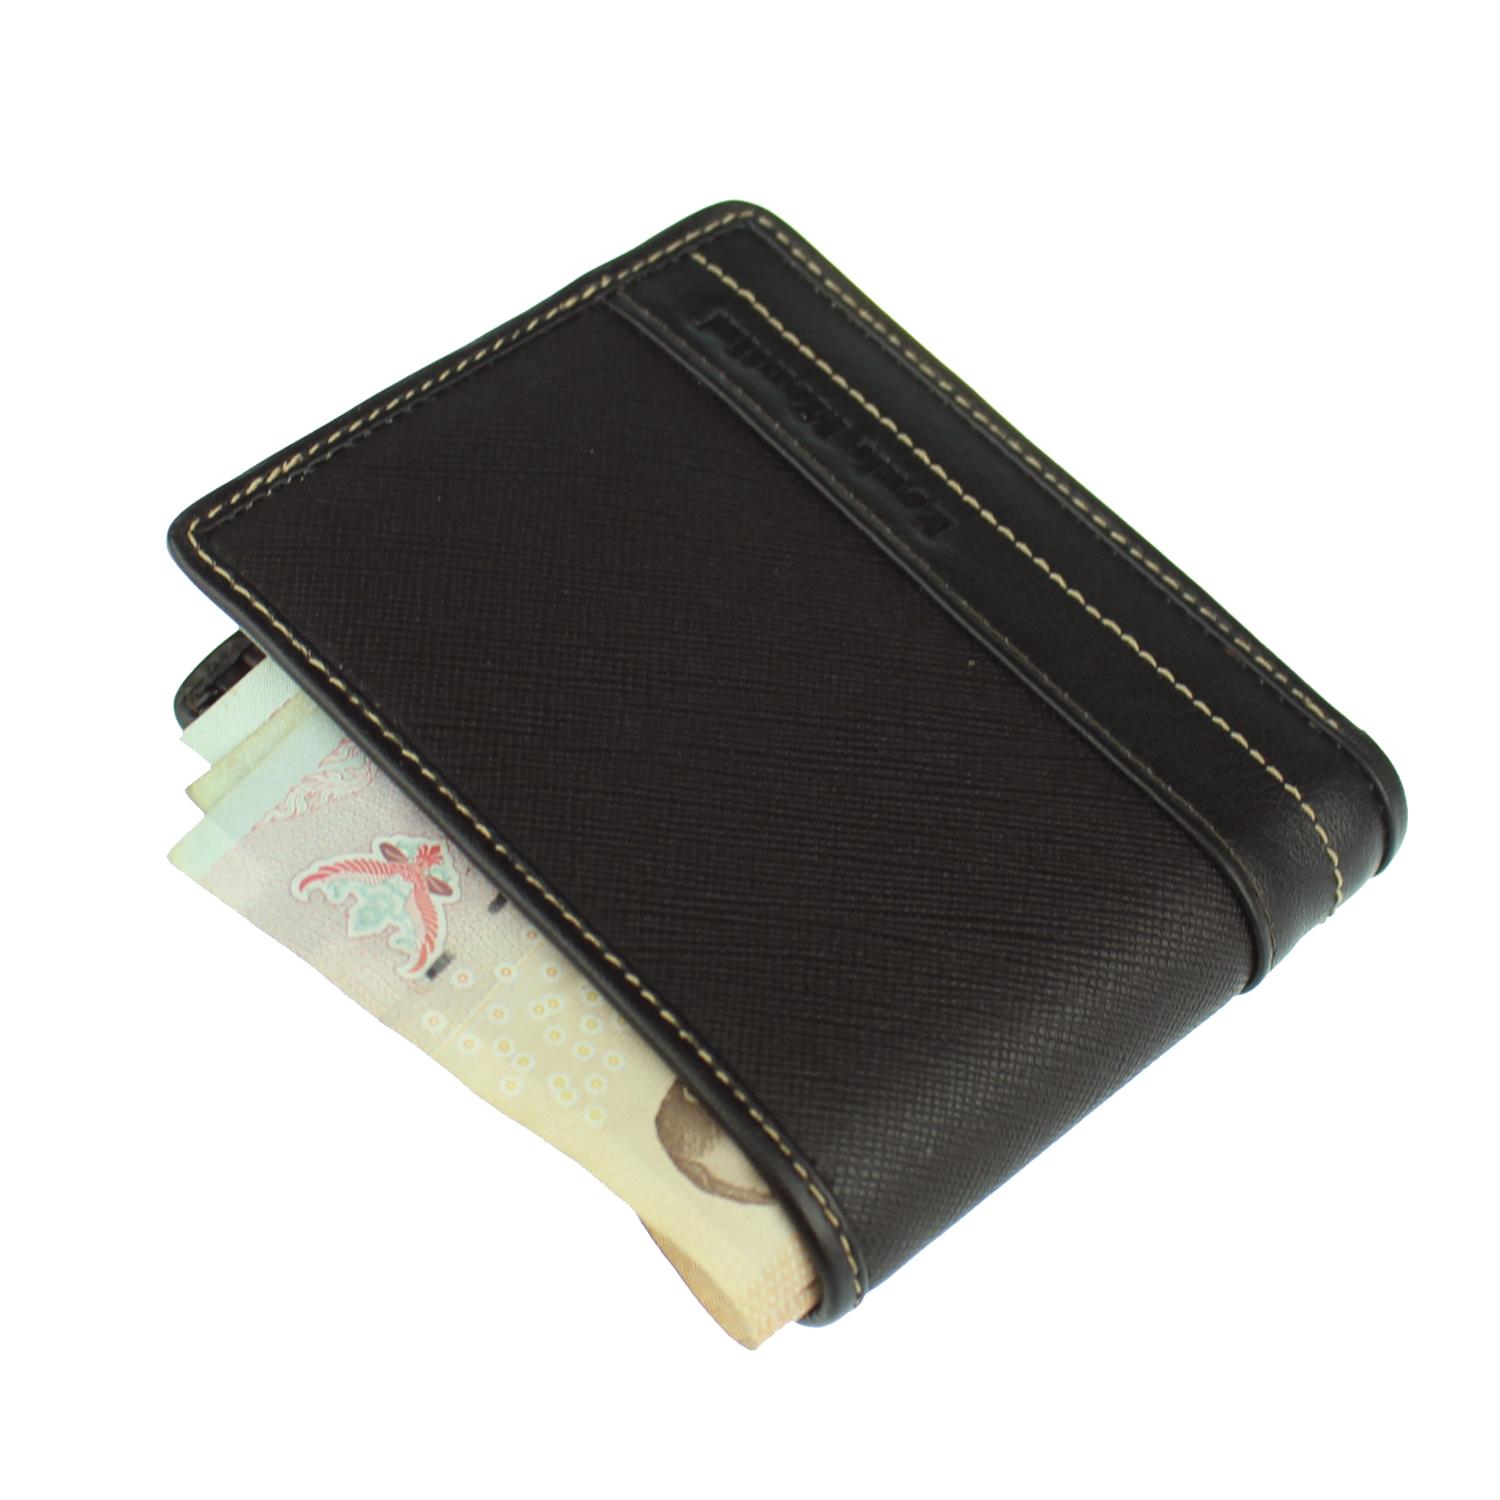 Louis Montini Vintage Wallet กระเป๋าสตางค์หนังวัว ดีไซน์คลาสสิก ย้อนยุค กระเป๋าหนังแท้ กระเป๋าผู้ชาย TTM083